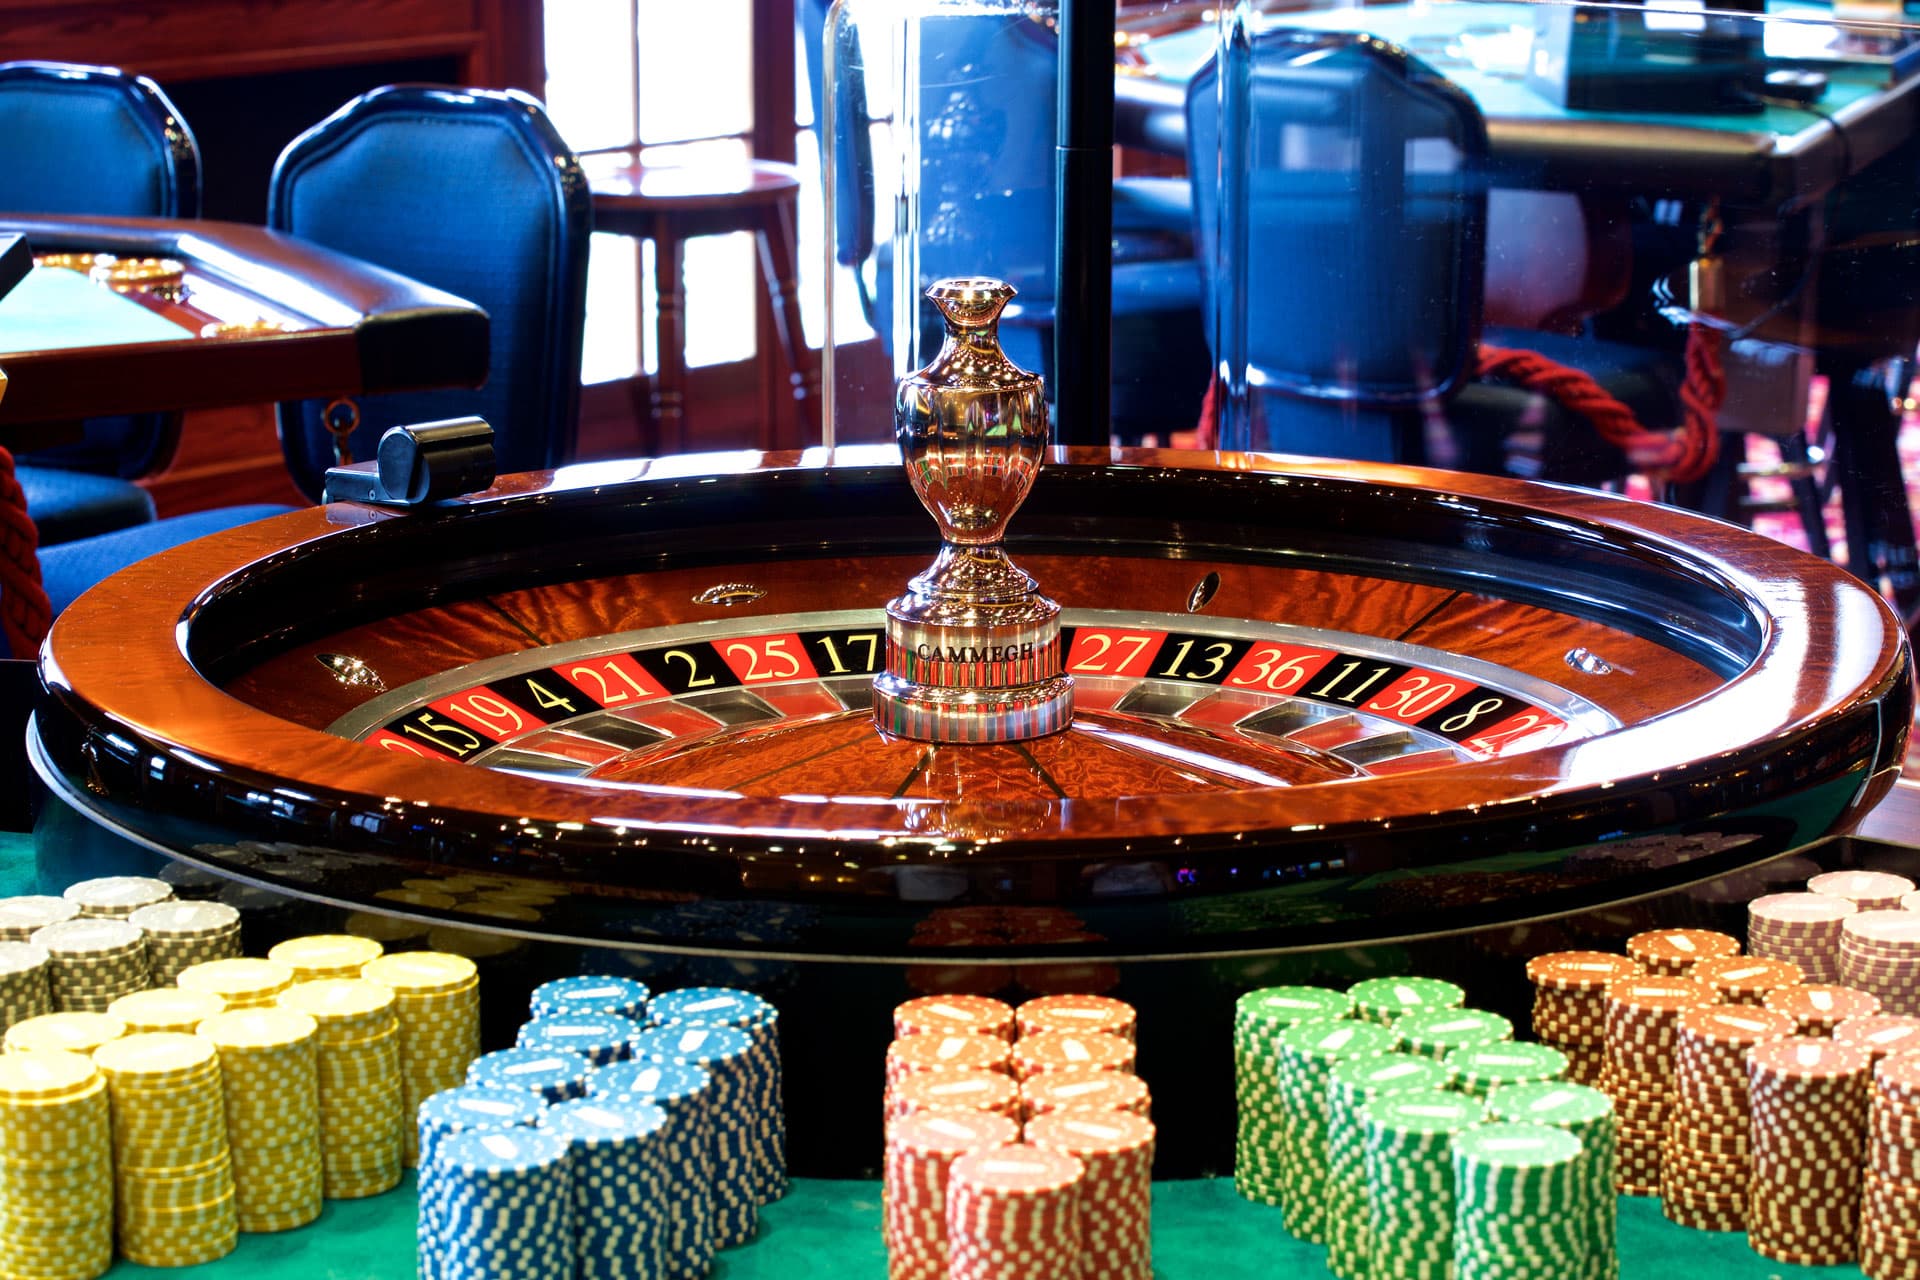 casino holdem poker online - iyftrading.com